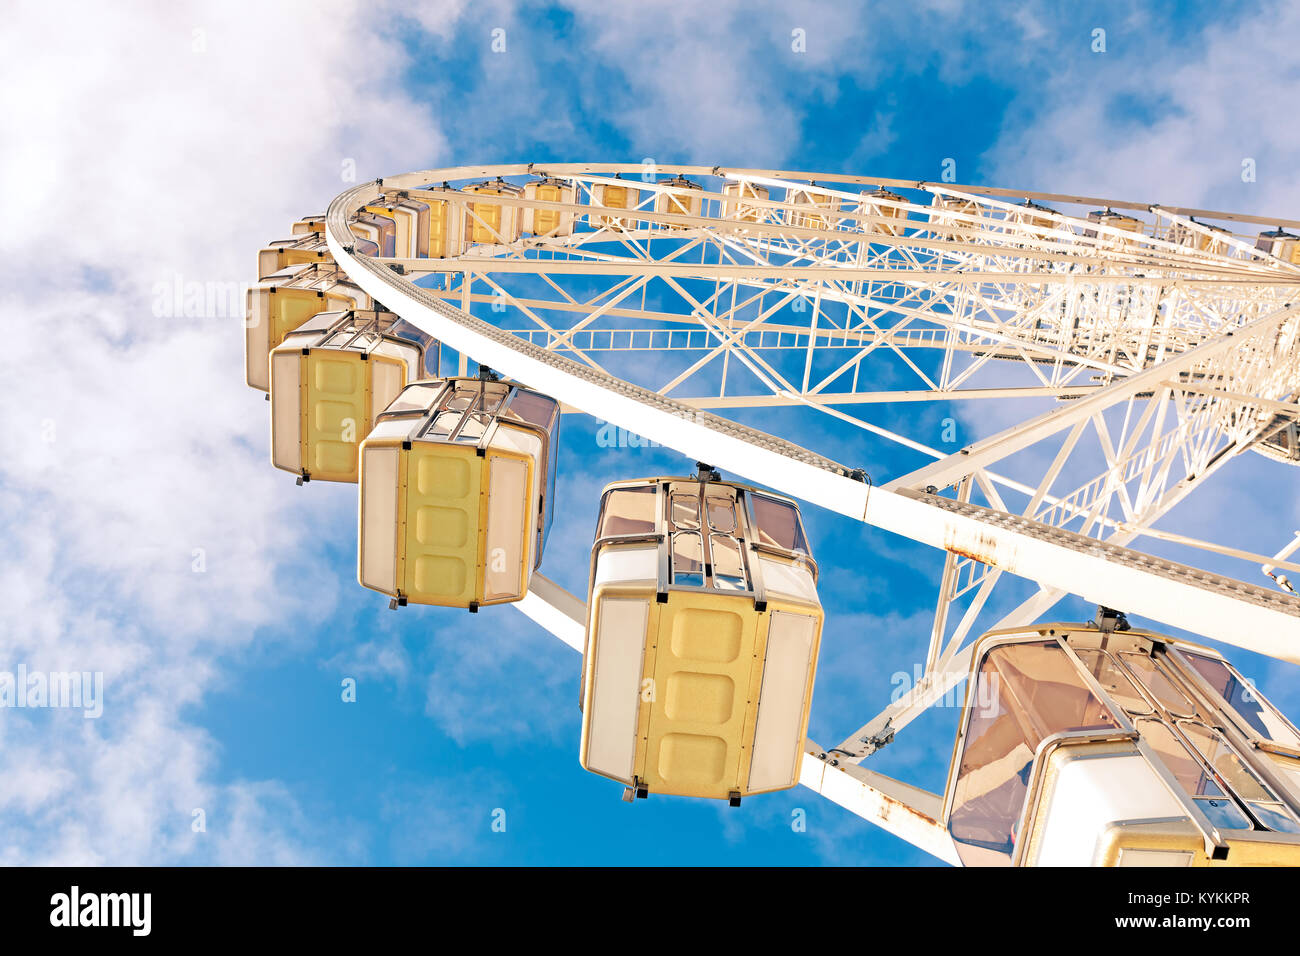 Jusqu'à lors d'une immense roue de Ferris sur fond de ciel bleu et nuages blancs. Appelée la Grande Roue, une tradition de Noël à Paris, France Banque D'Images